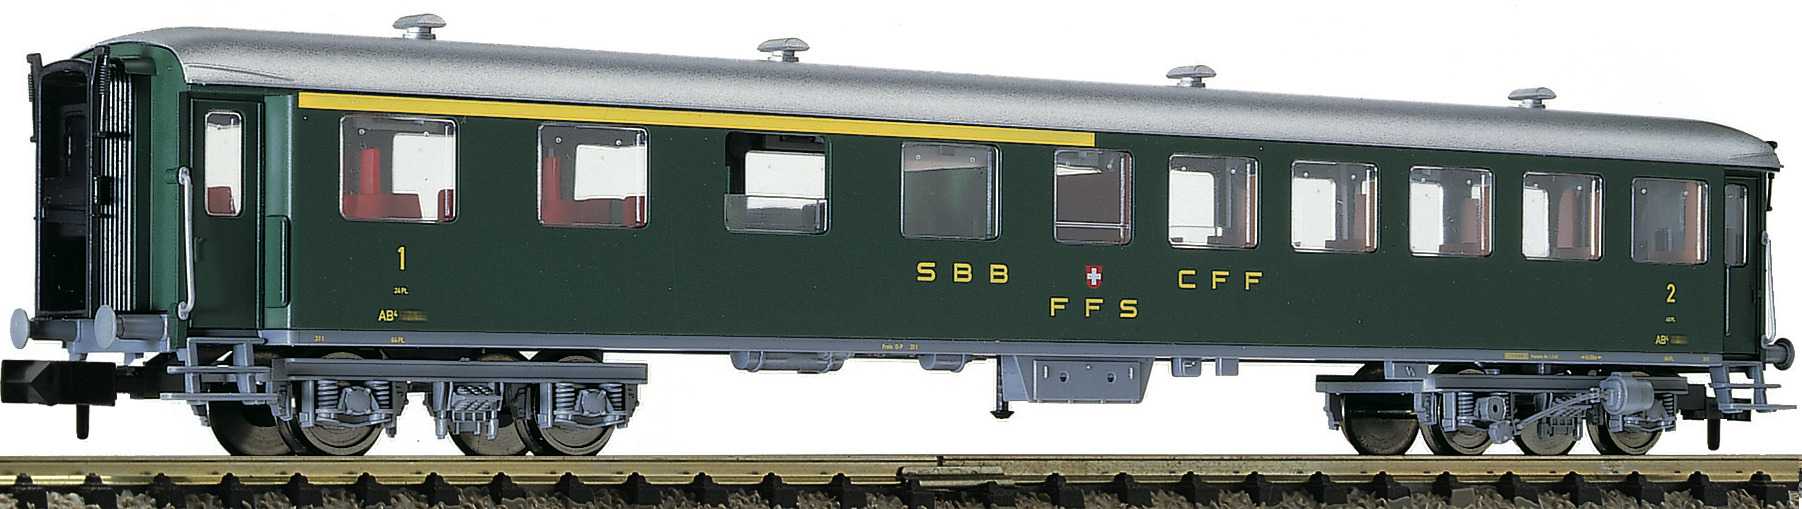  Roco-Fleischmann Autocars de train express 1ère / 2ème classe type AB